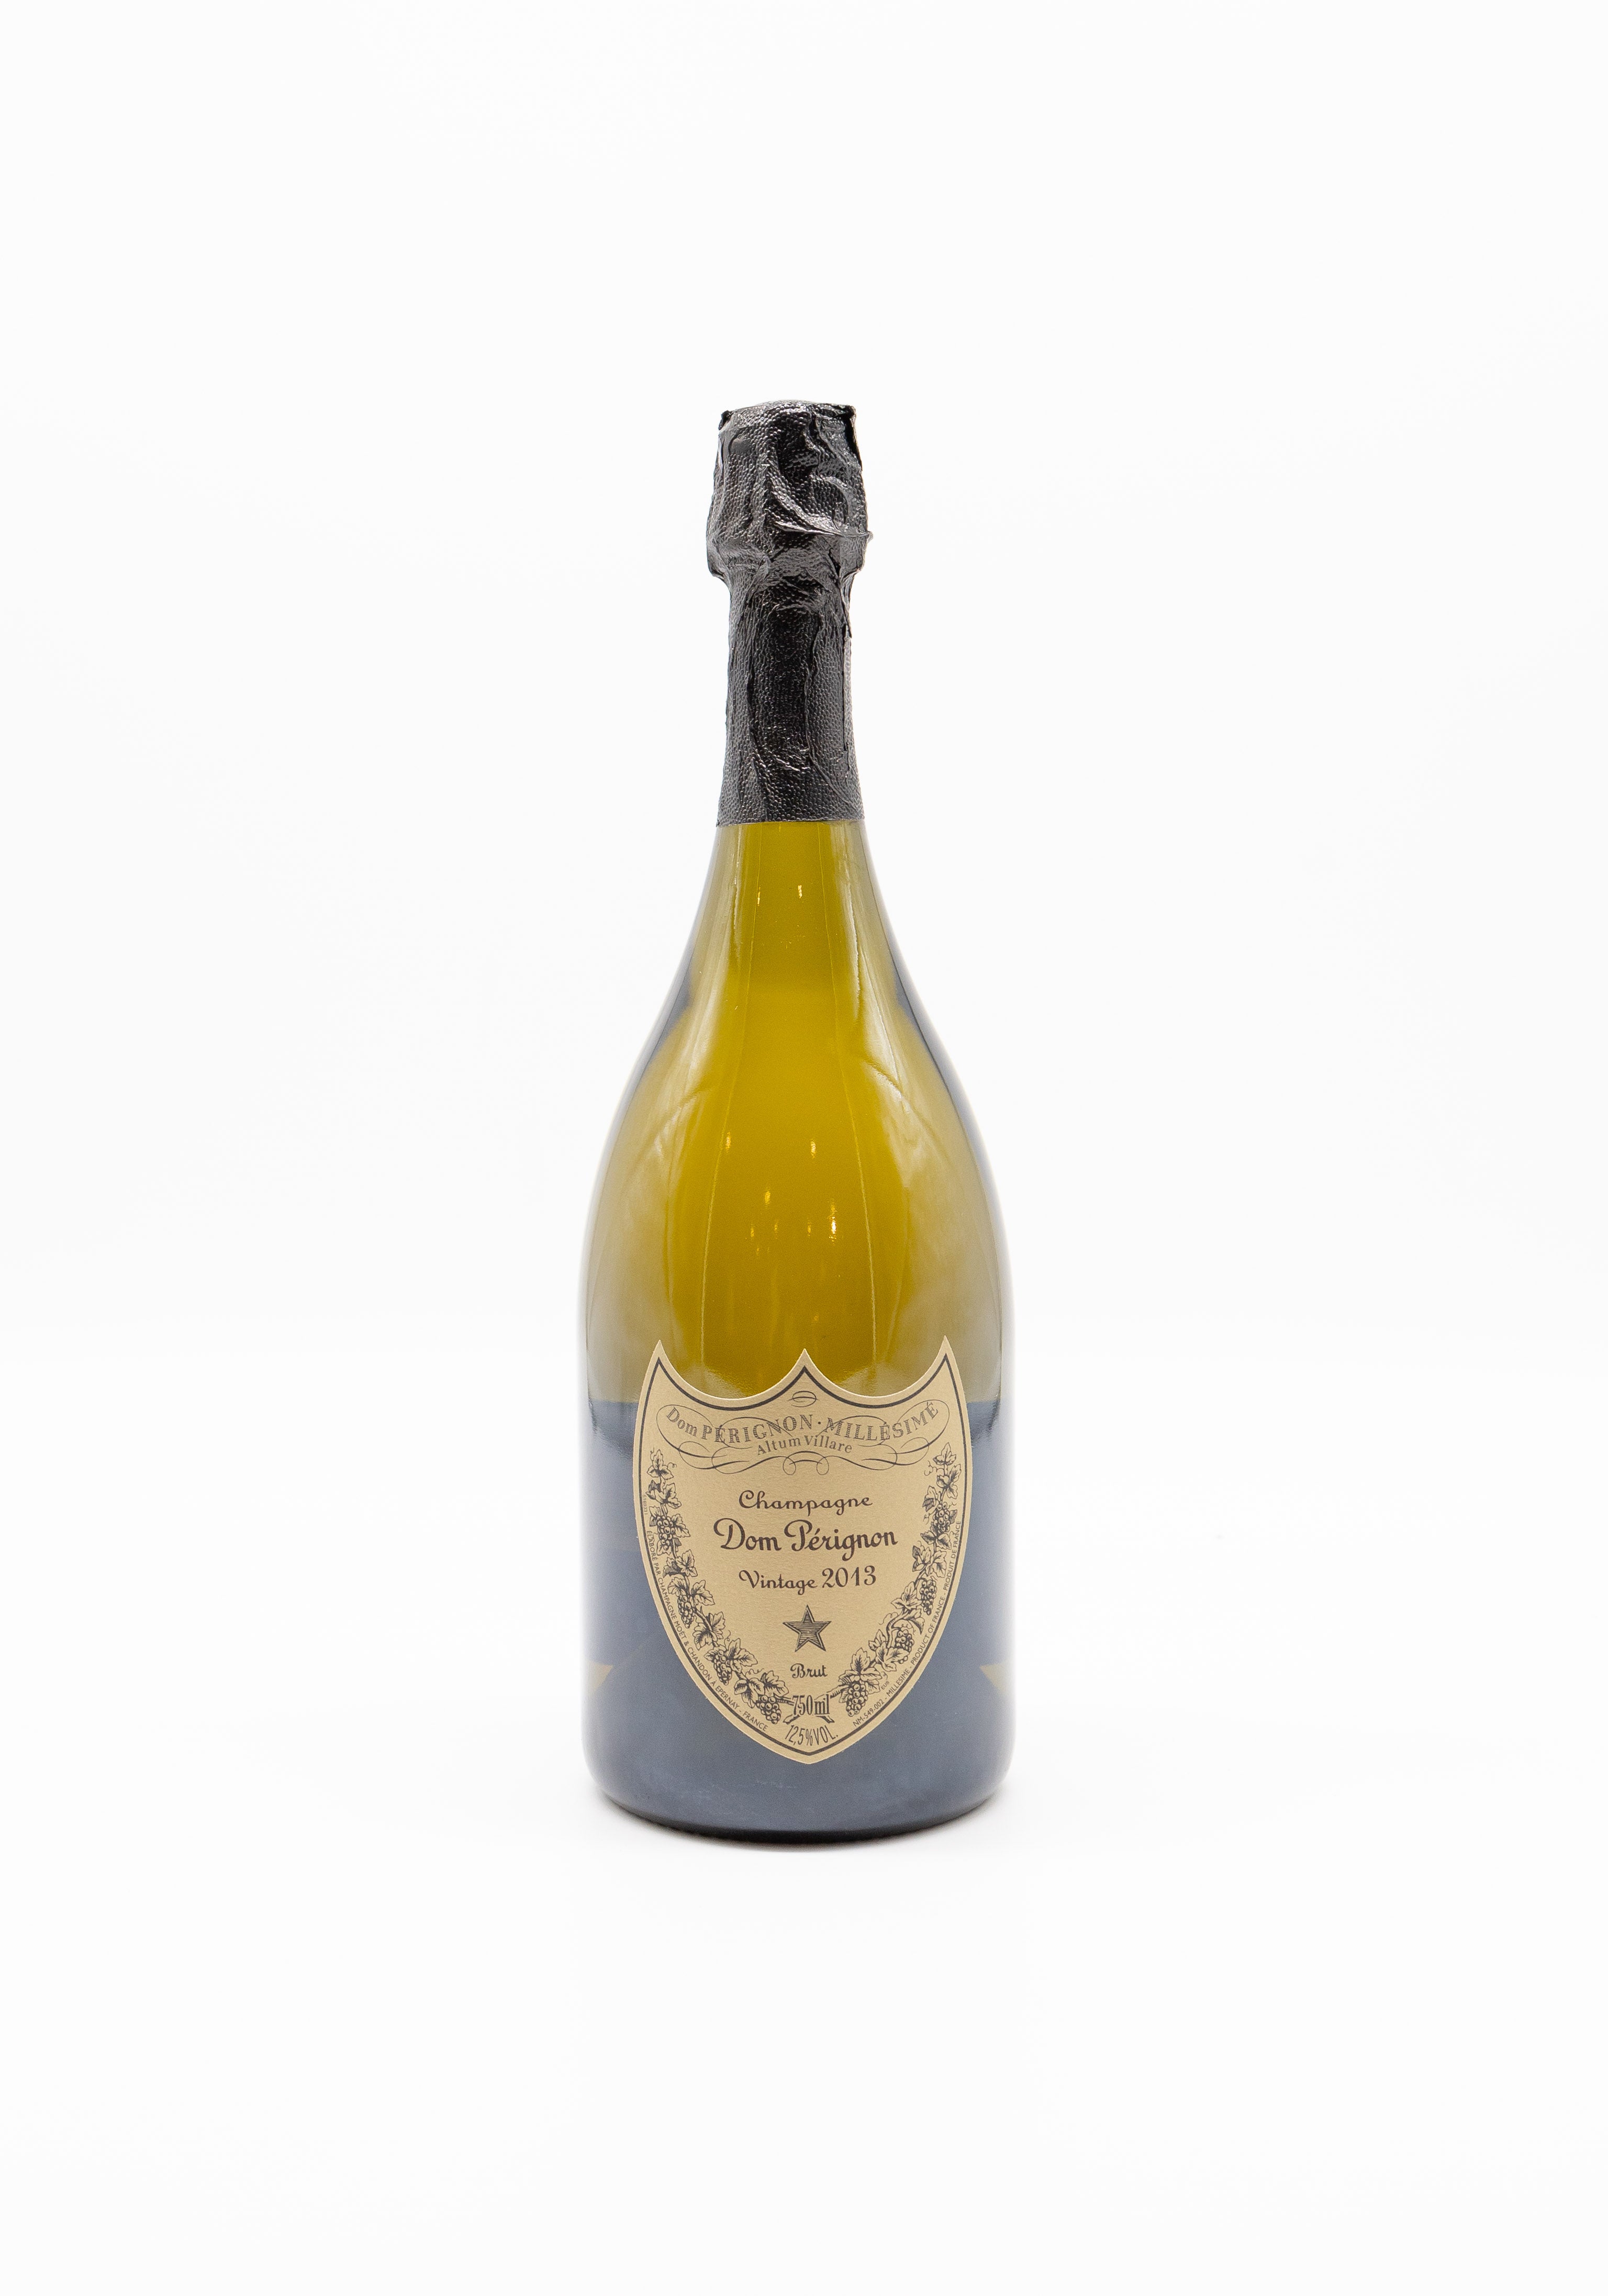 Champagne+Dom+Perignon+Vintage+2013+Grand+Cru